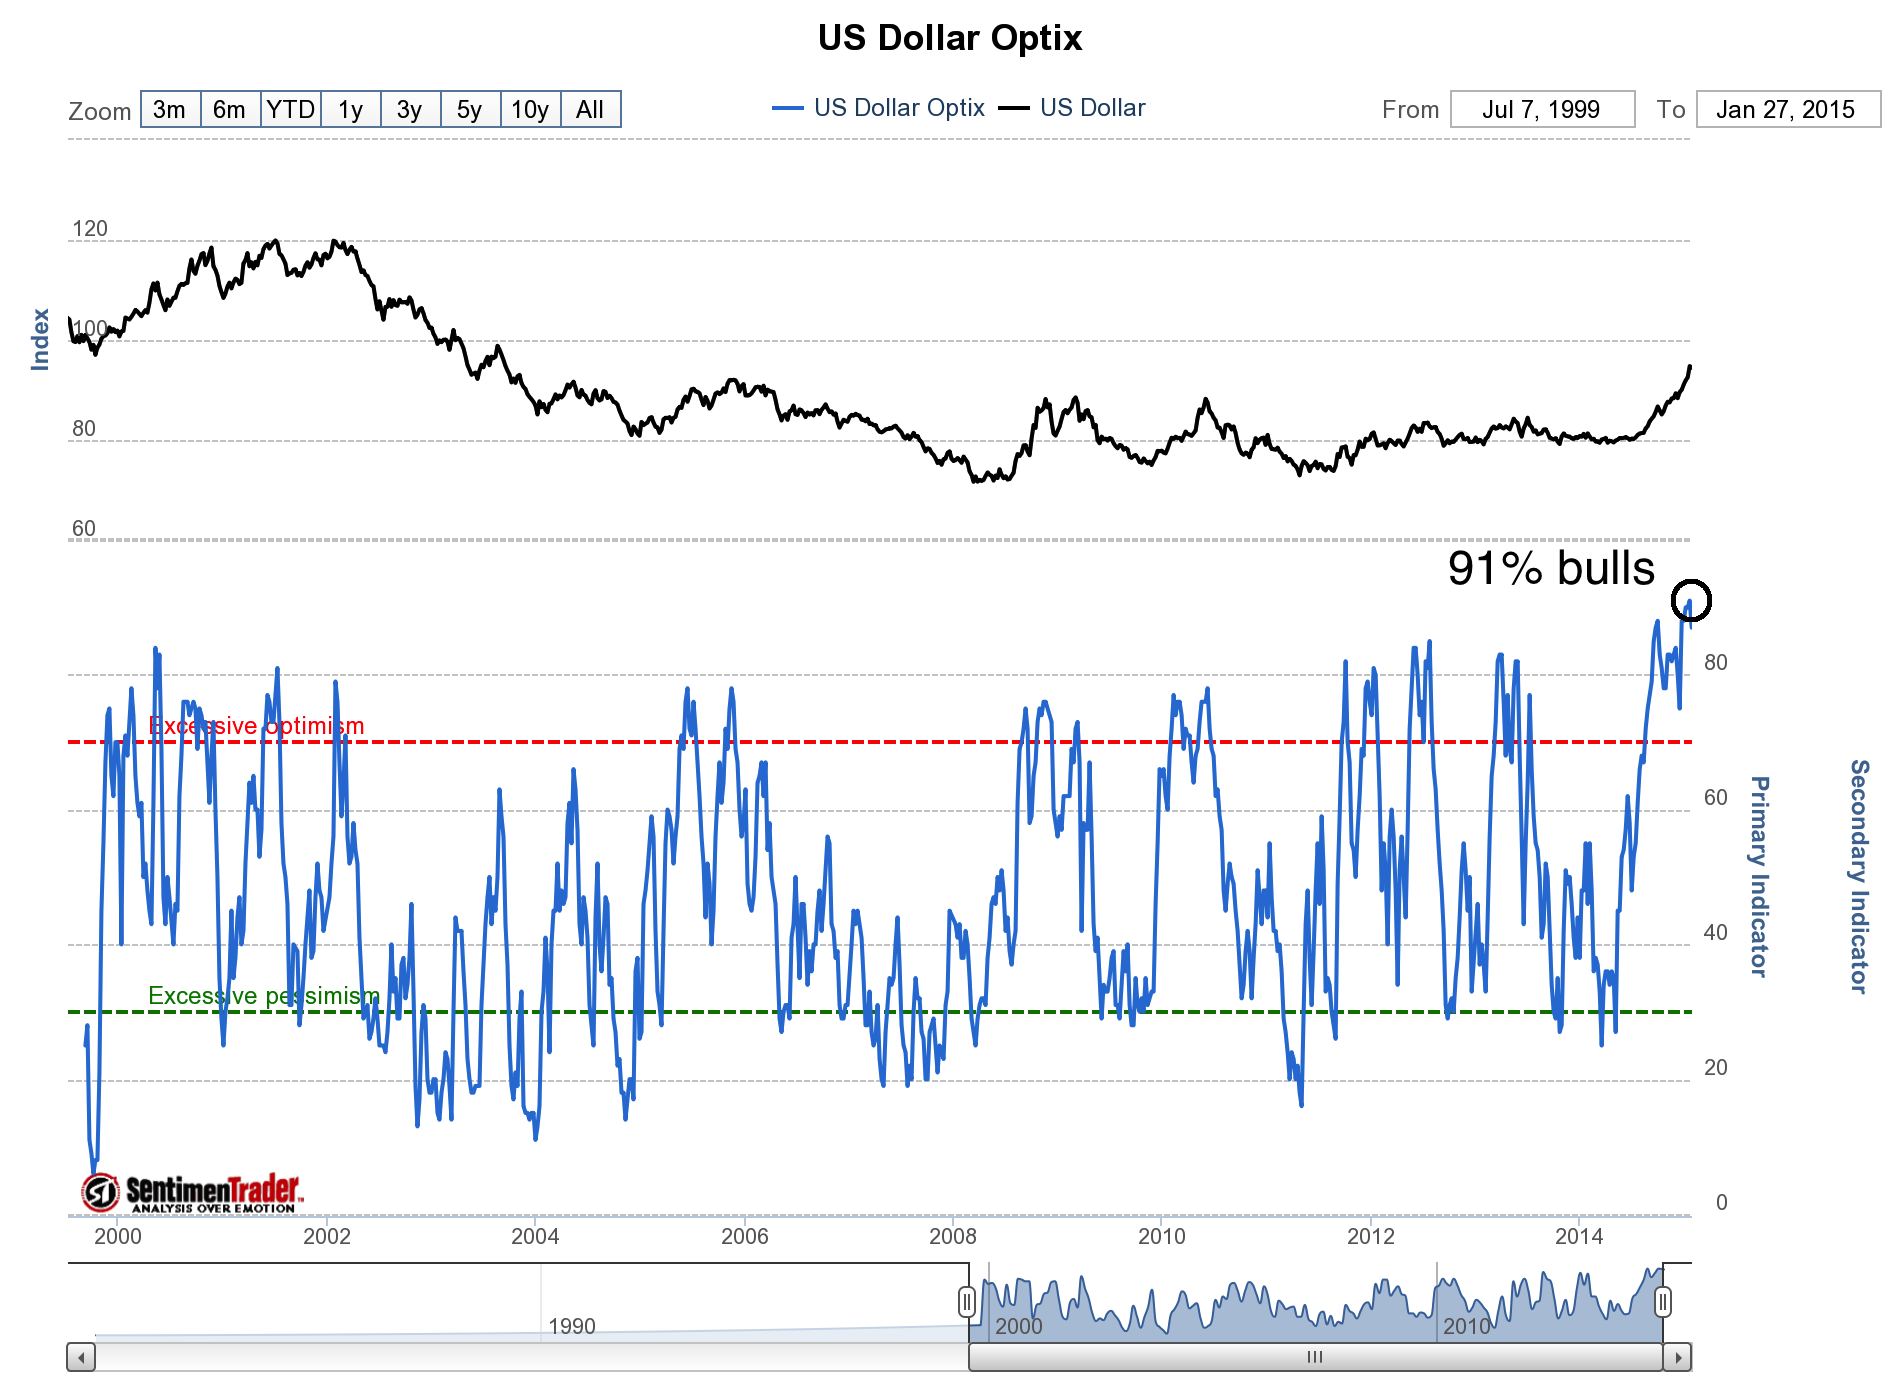 US dollar Optix Vs. US dollar chart